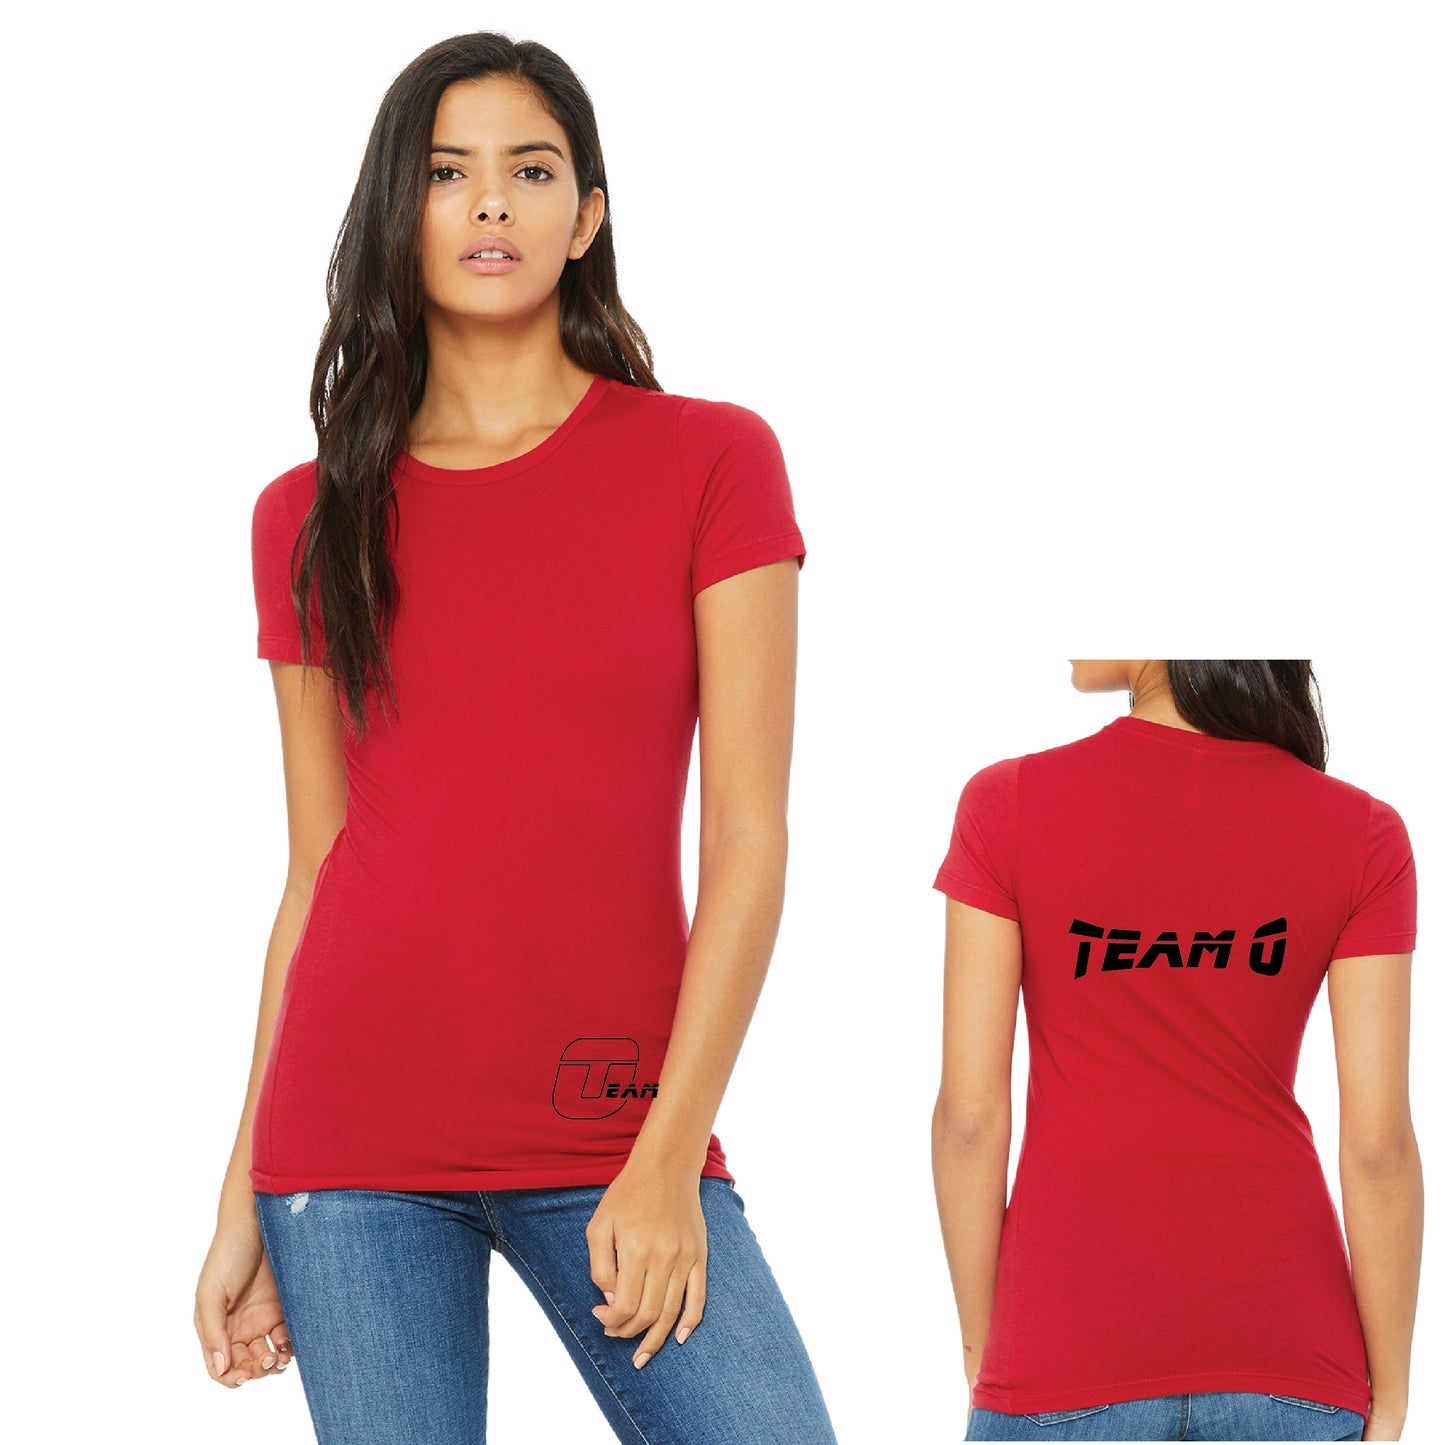 Team O Ladies' T-Shirt